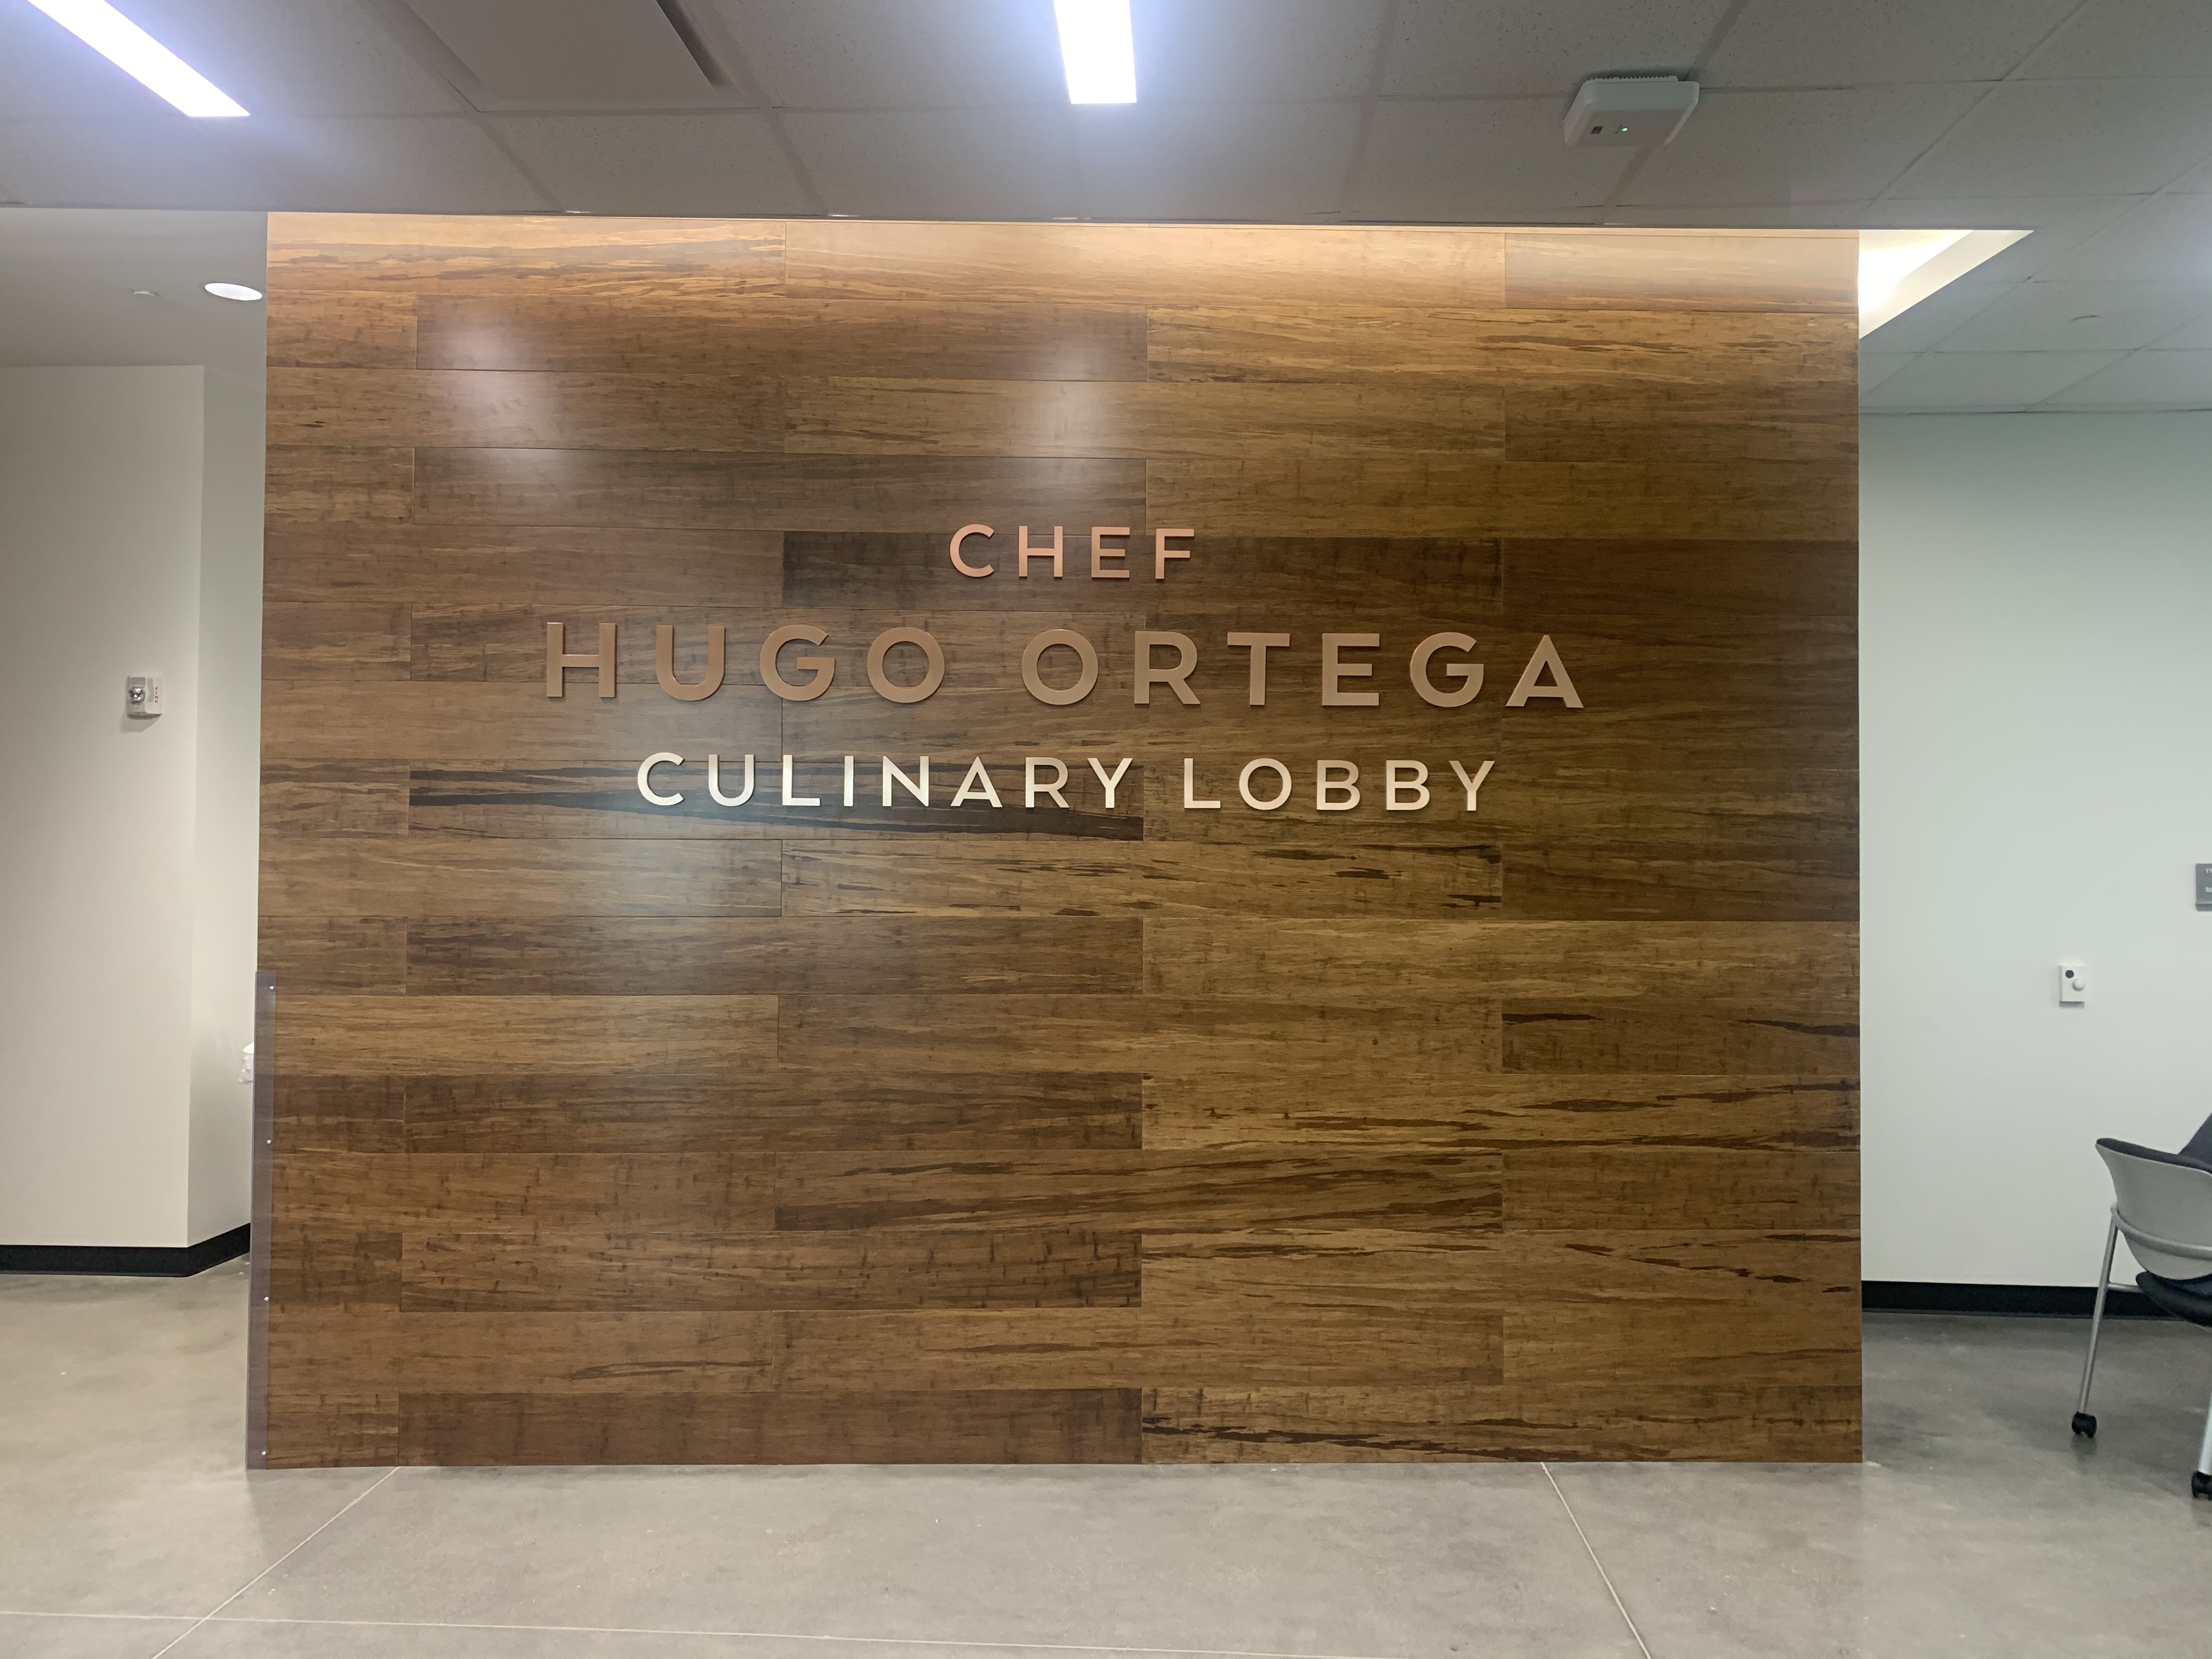 Culinary Lobby Naming